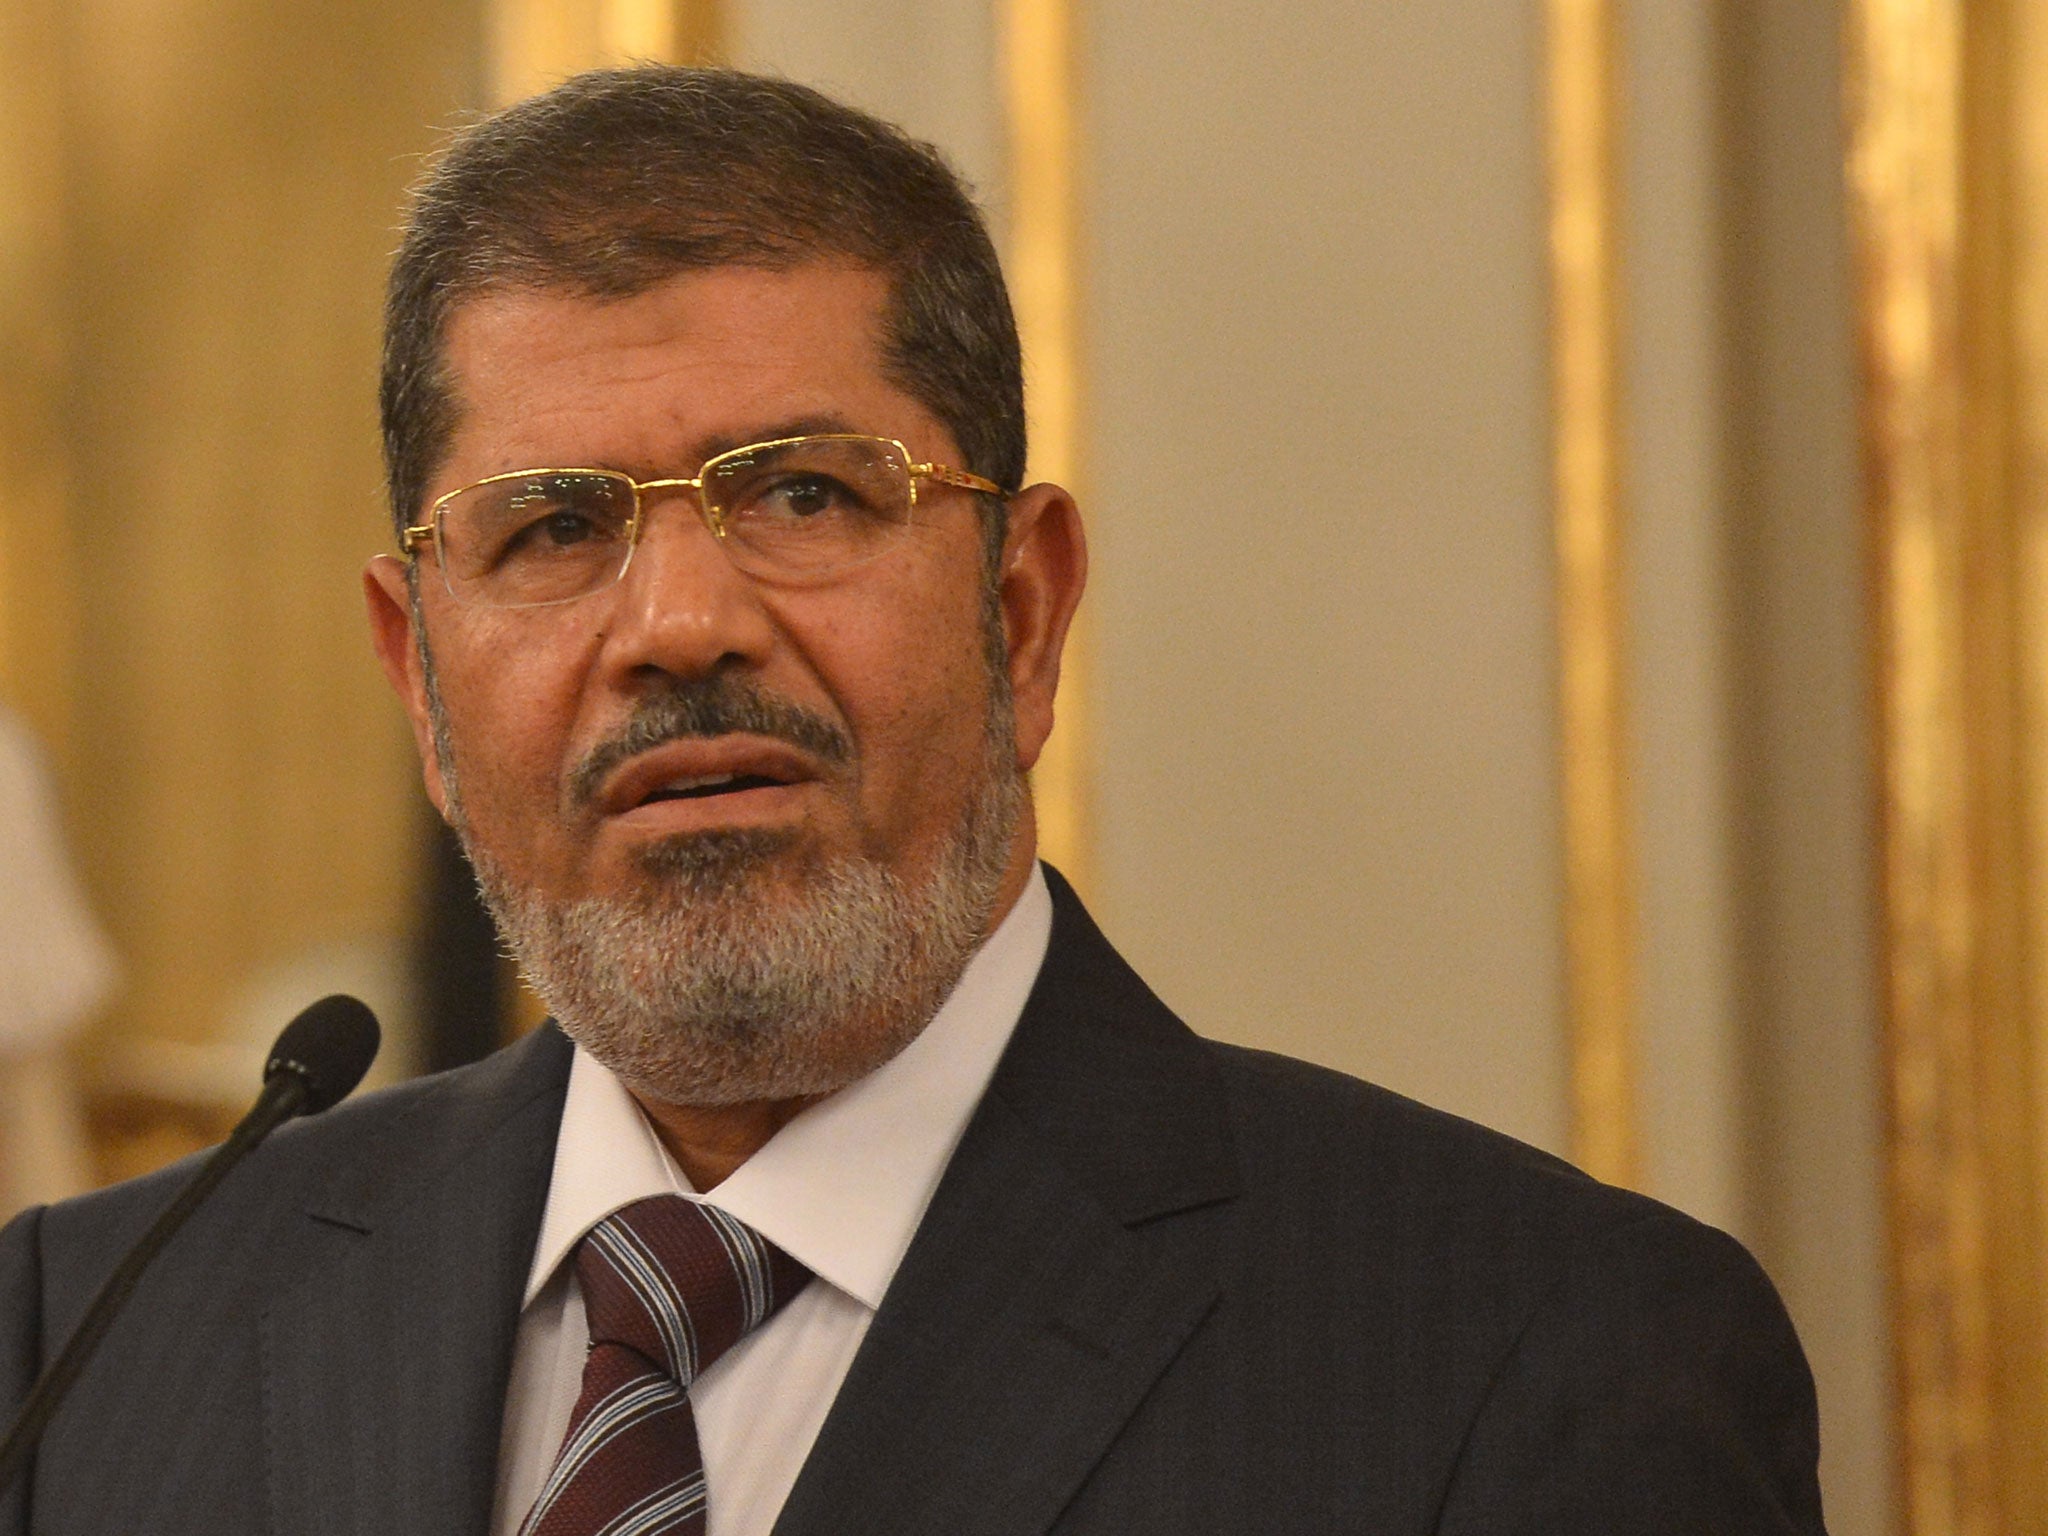 Ousted Egyptian leader Mohammed Morsi